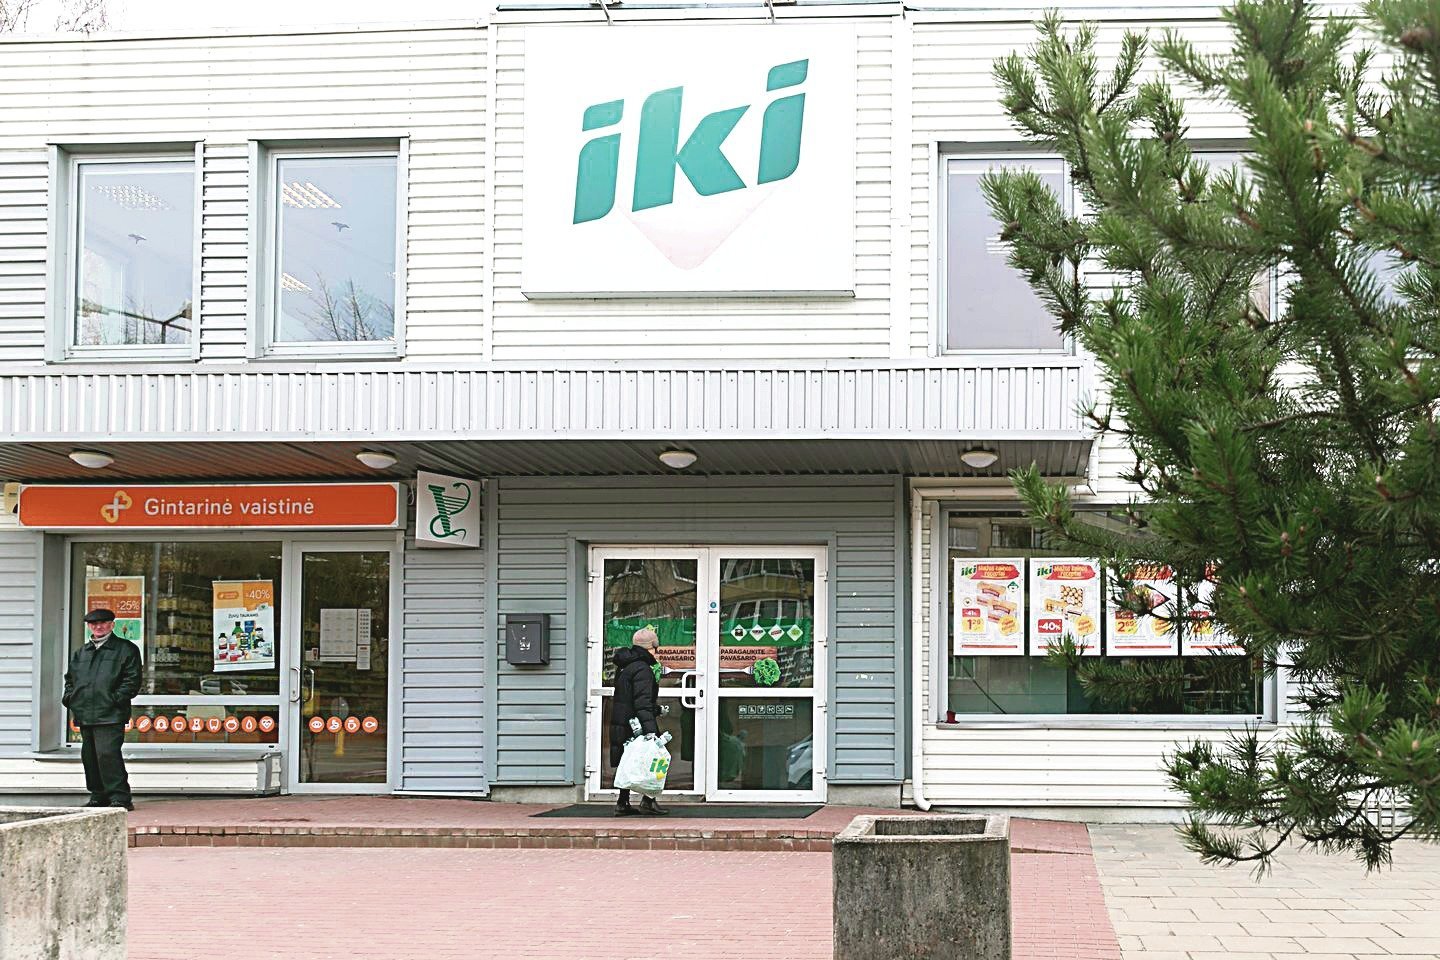 Apiplėšimas šioje parduotuvėje Vilniuje buvo suvaidintas po darbo valandų.